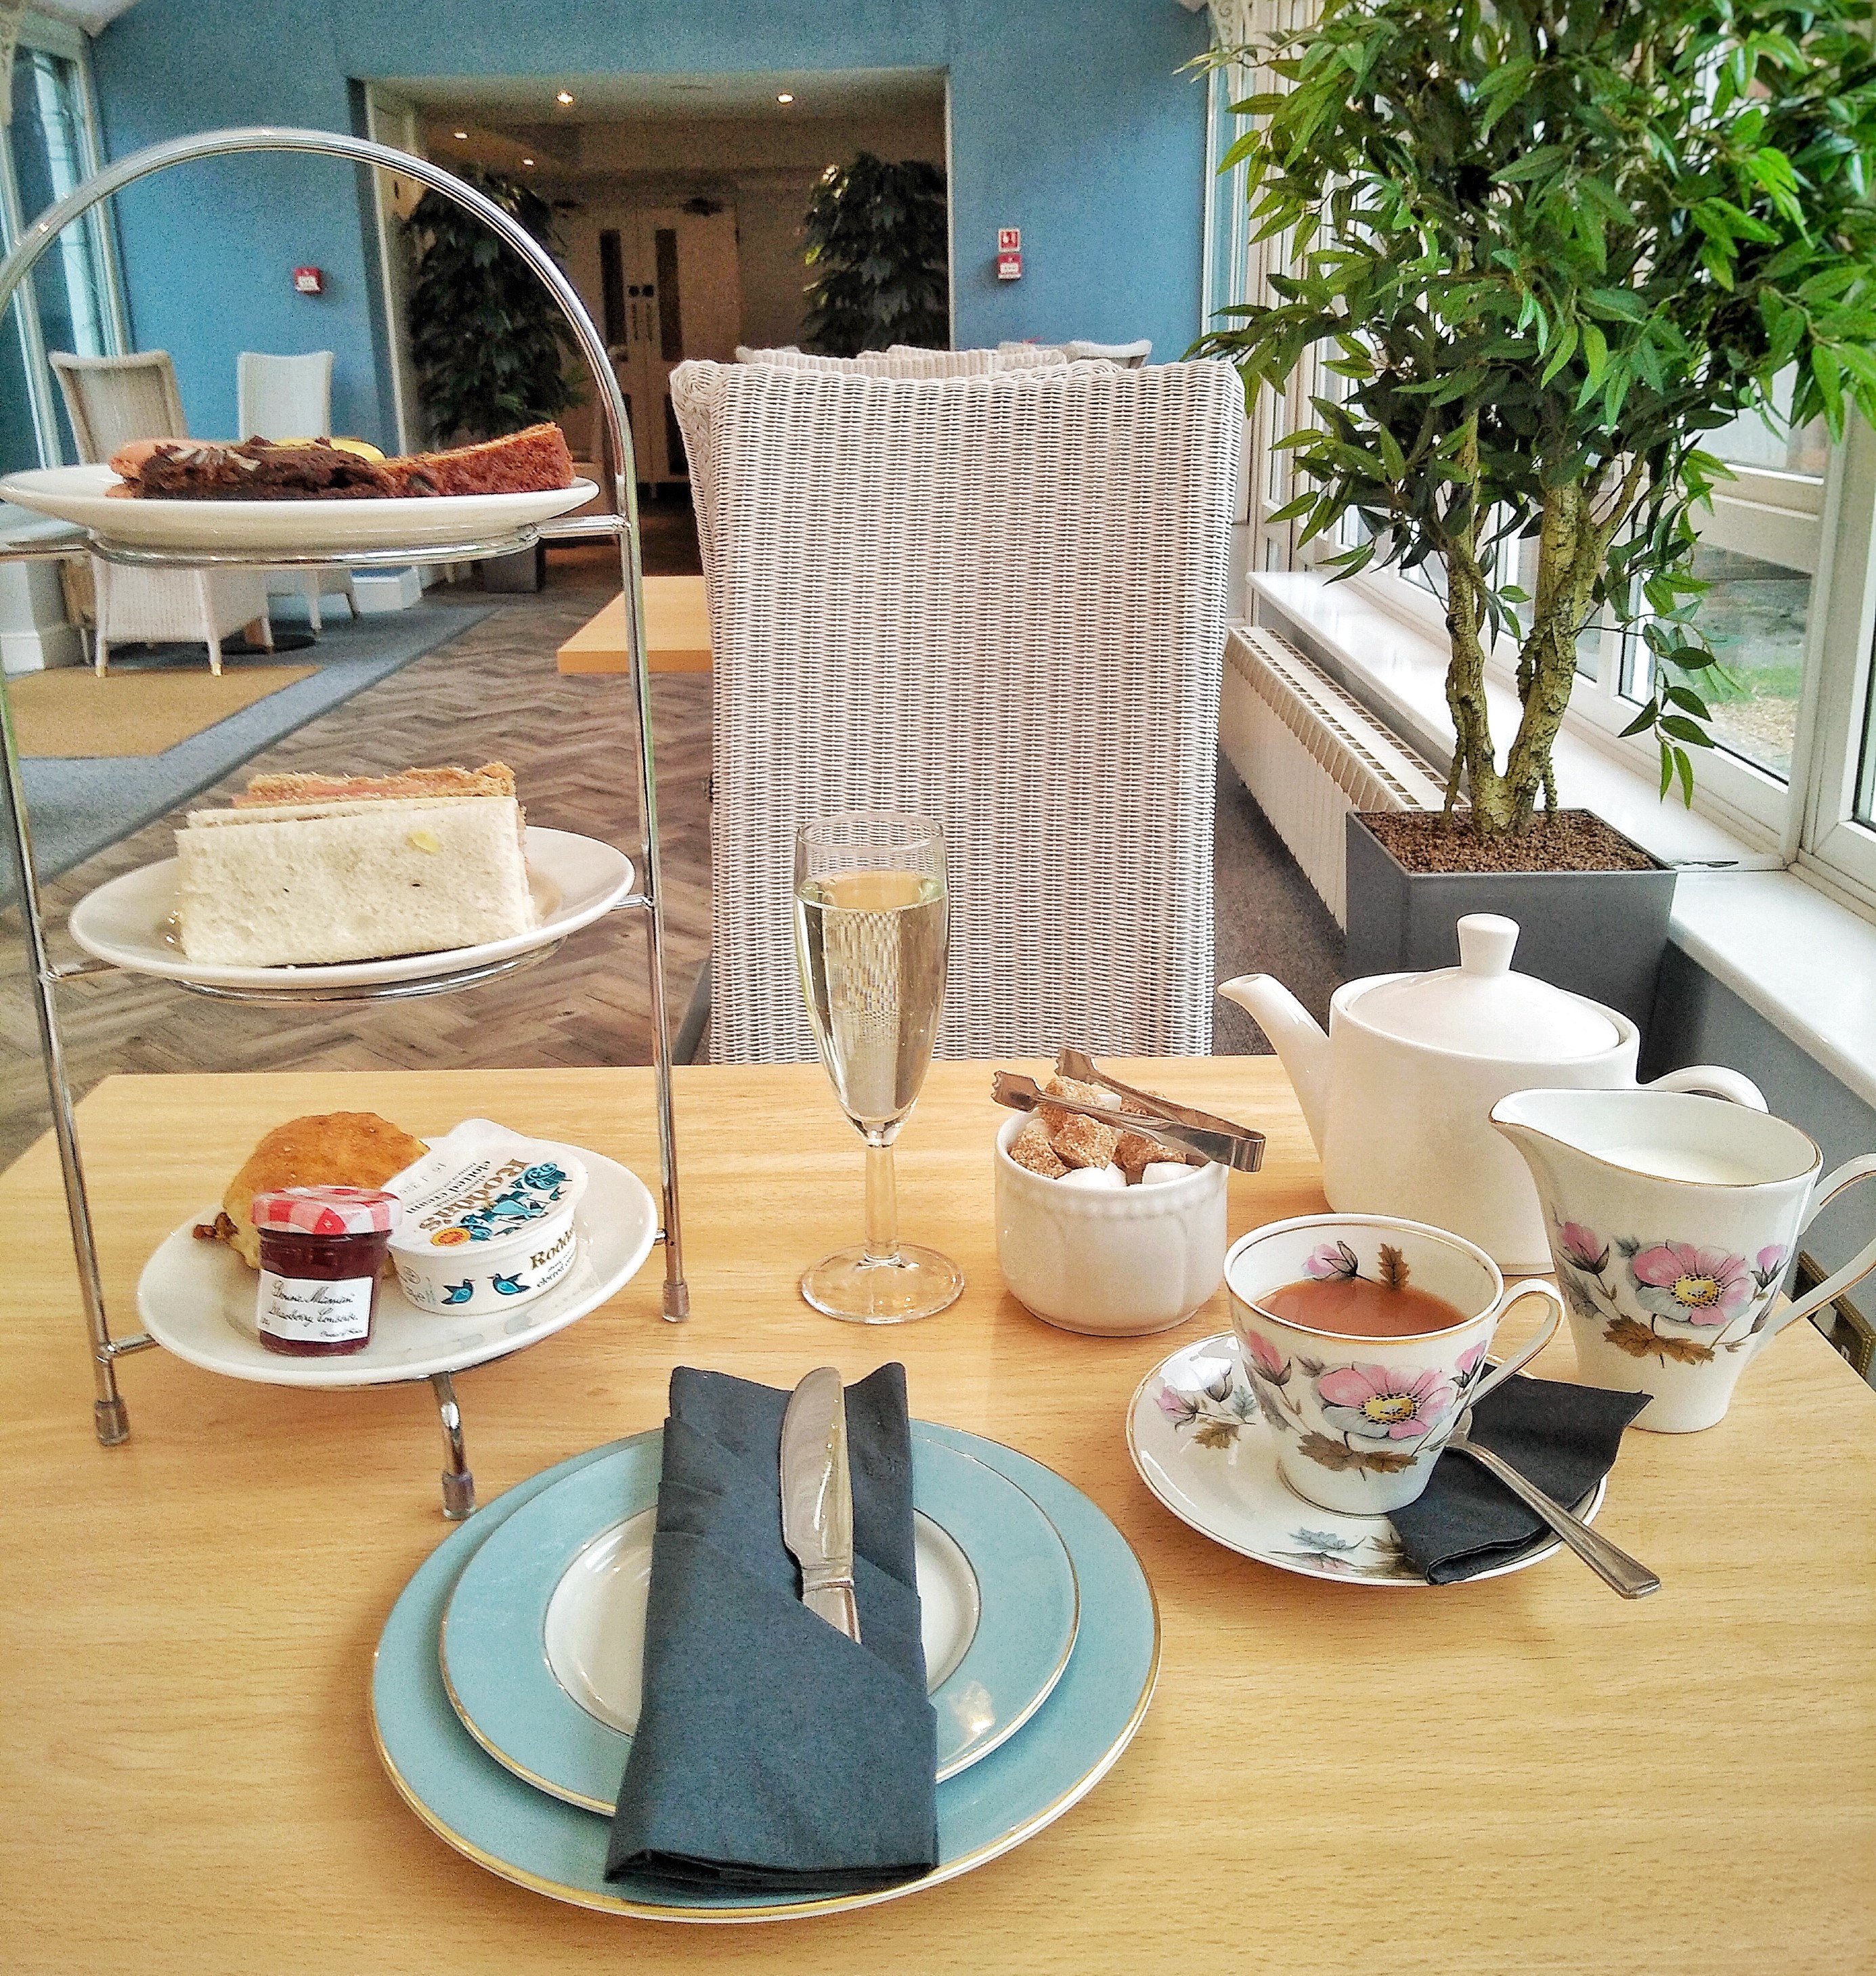 Farnham Hog's Back Hotel Spa Afternoon Tea